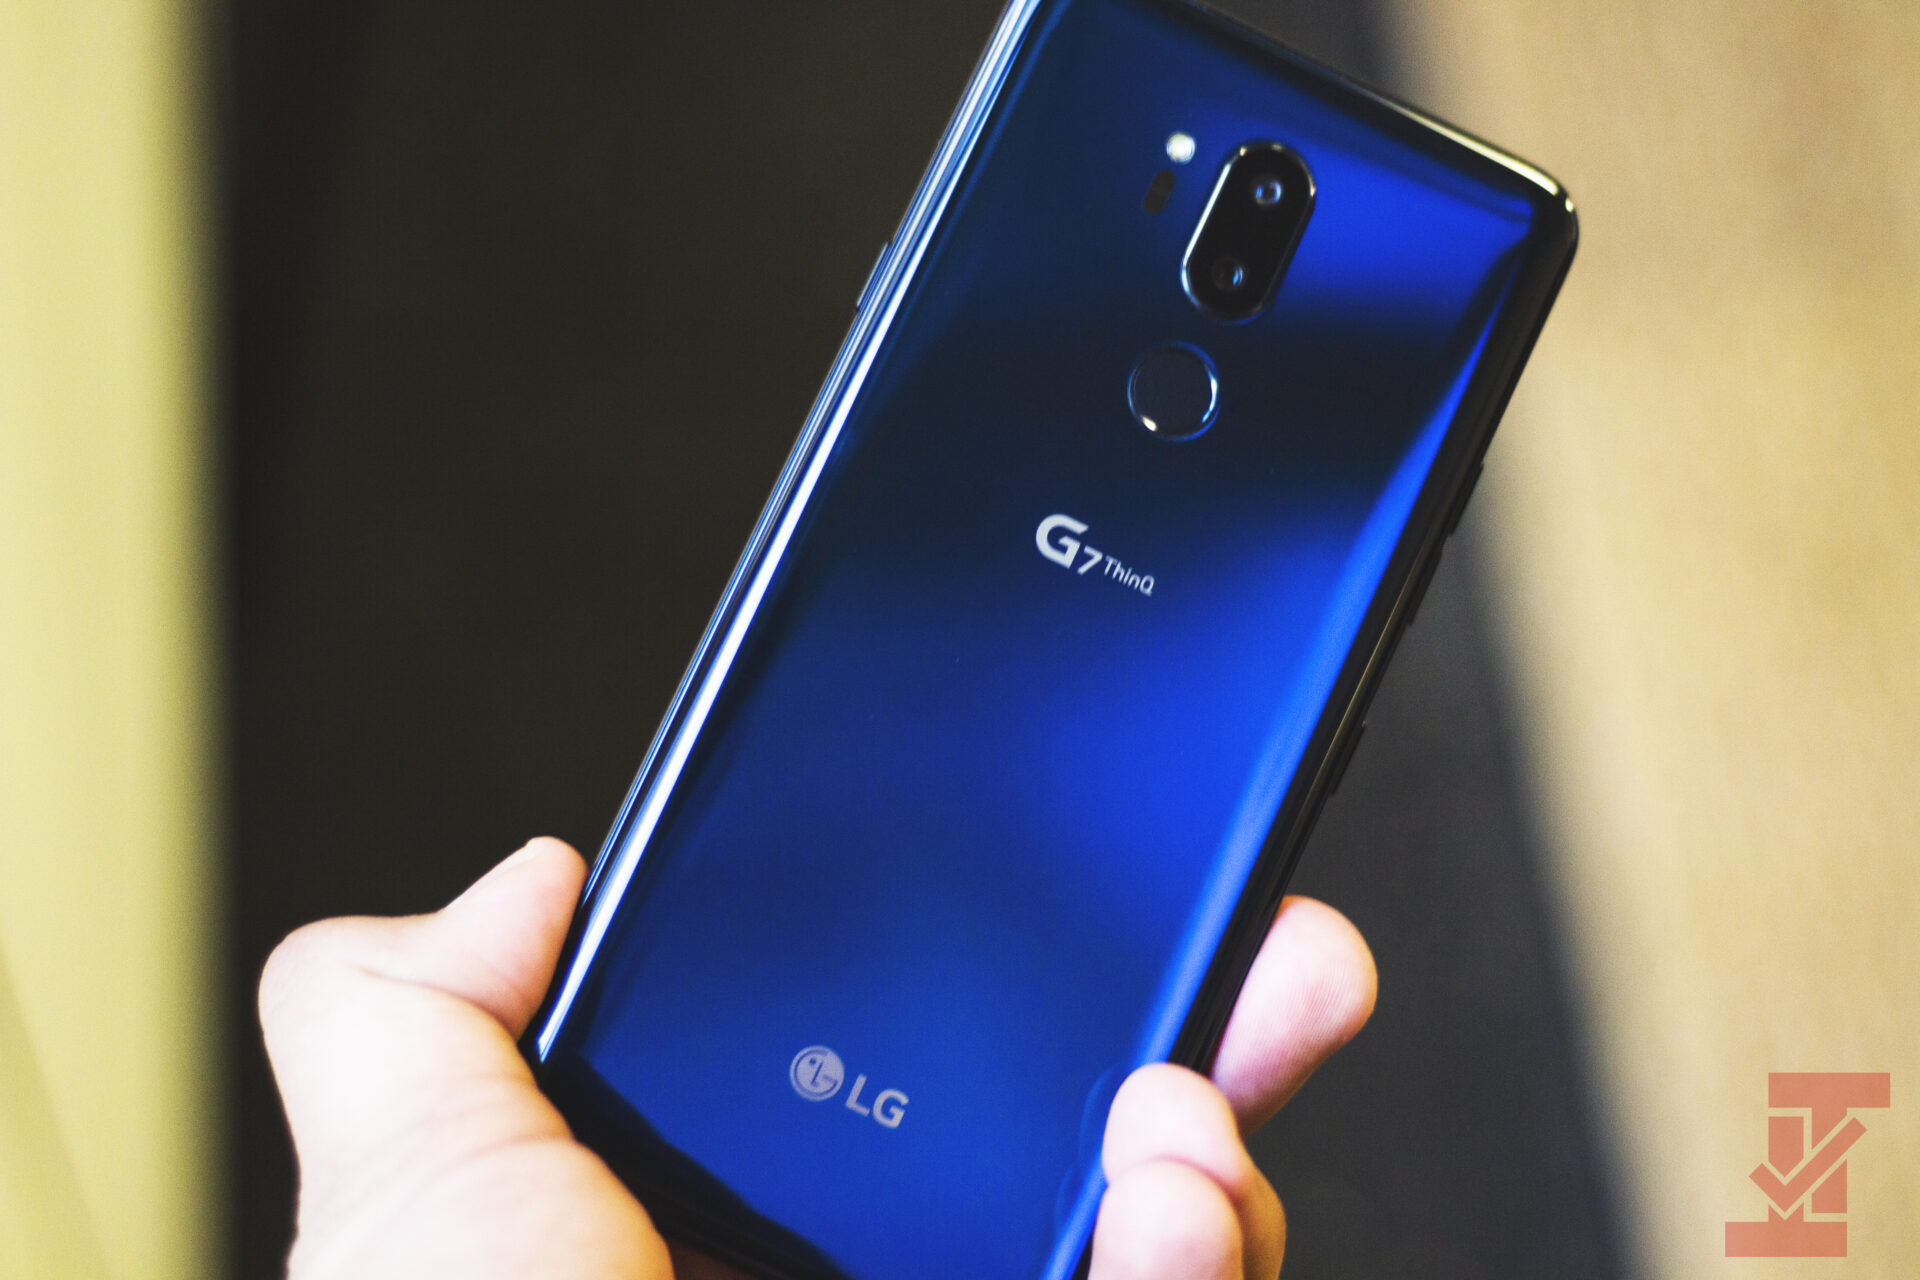 LG G7 ThinQ and LG G7+ ThinQ